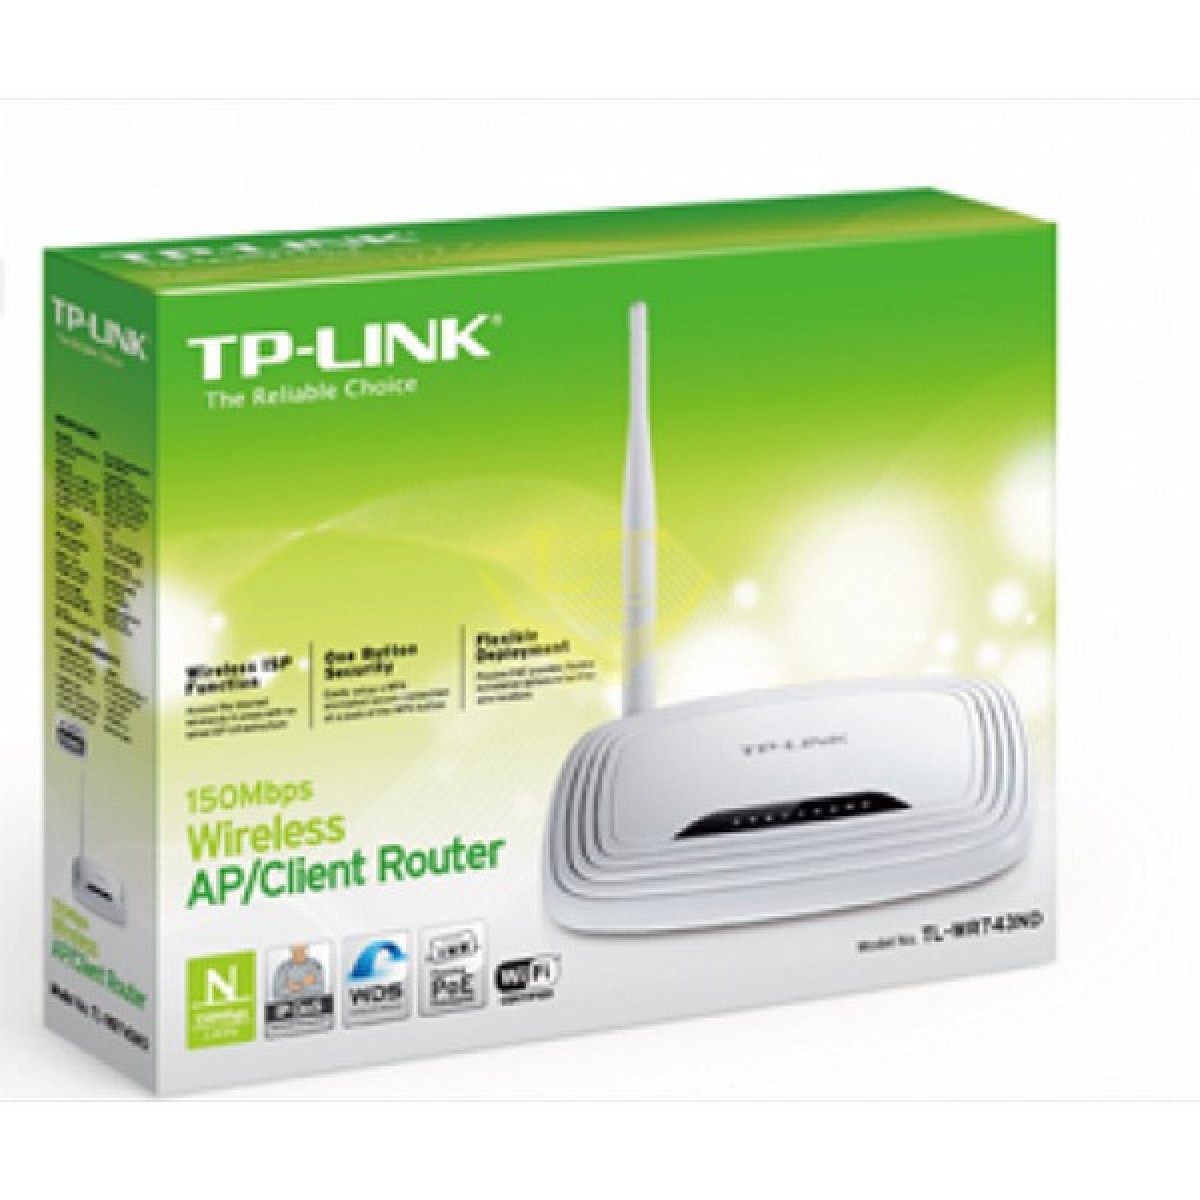 Модели роутера tp link. Wi-Fi роутер TP-link TL-wr743nd. TP link 743nd. WIFI роутер TP link wr743nd. Беспроводной маршрутизатор TP-link до 150 Мбит с.